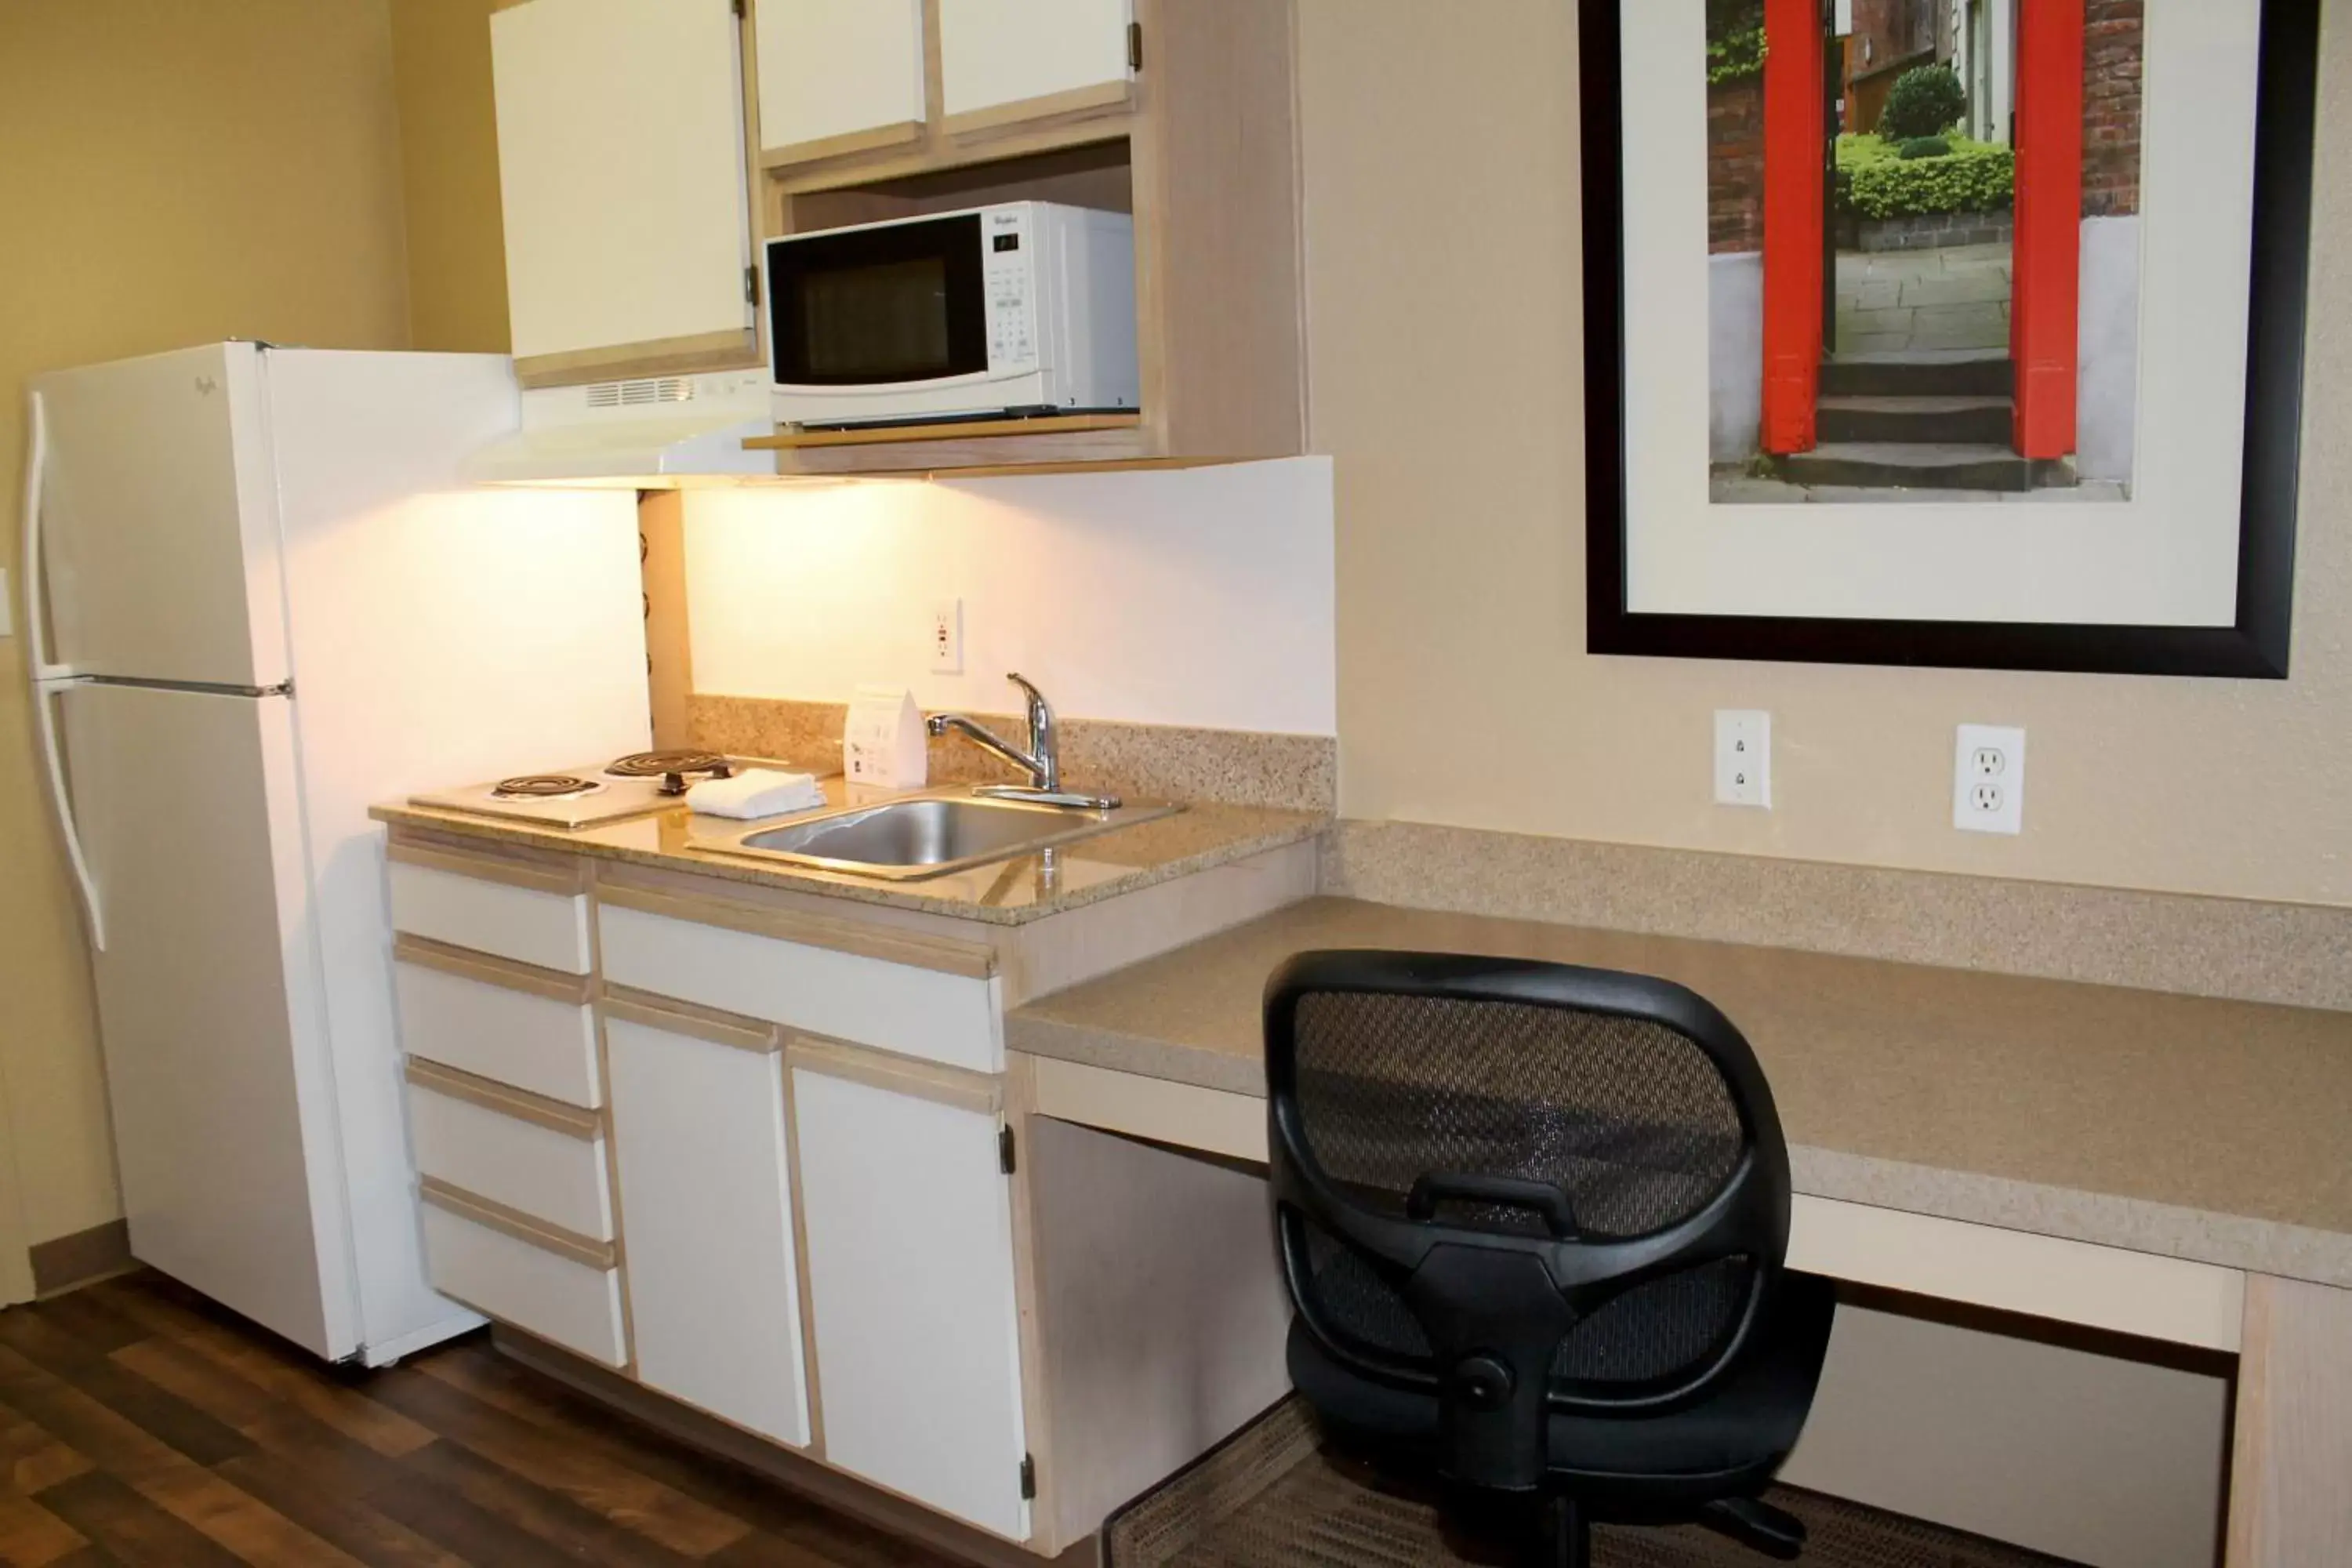 Kitchen or kitchenette, Kitchen/Kitchenette in Extended Stay America Suites - Houston - Katy Freeway - Energy Corridor